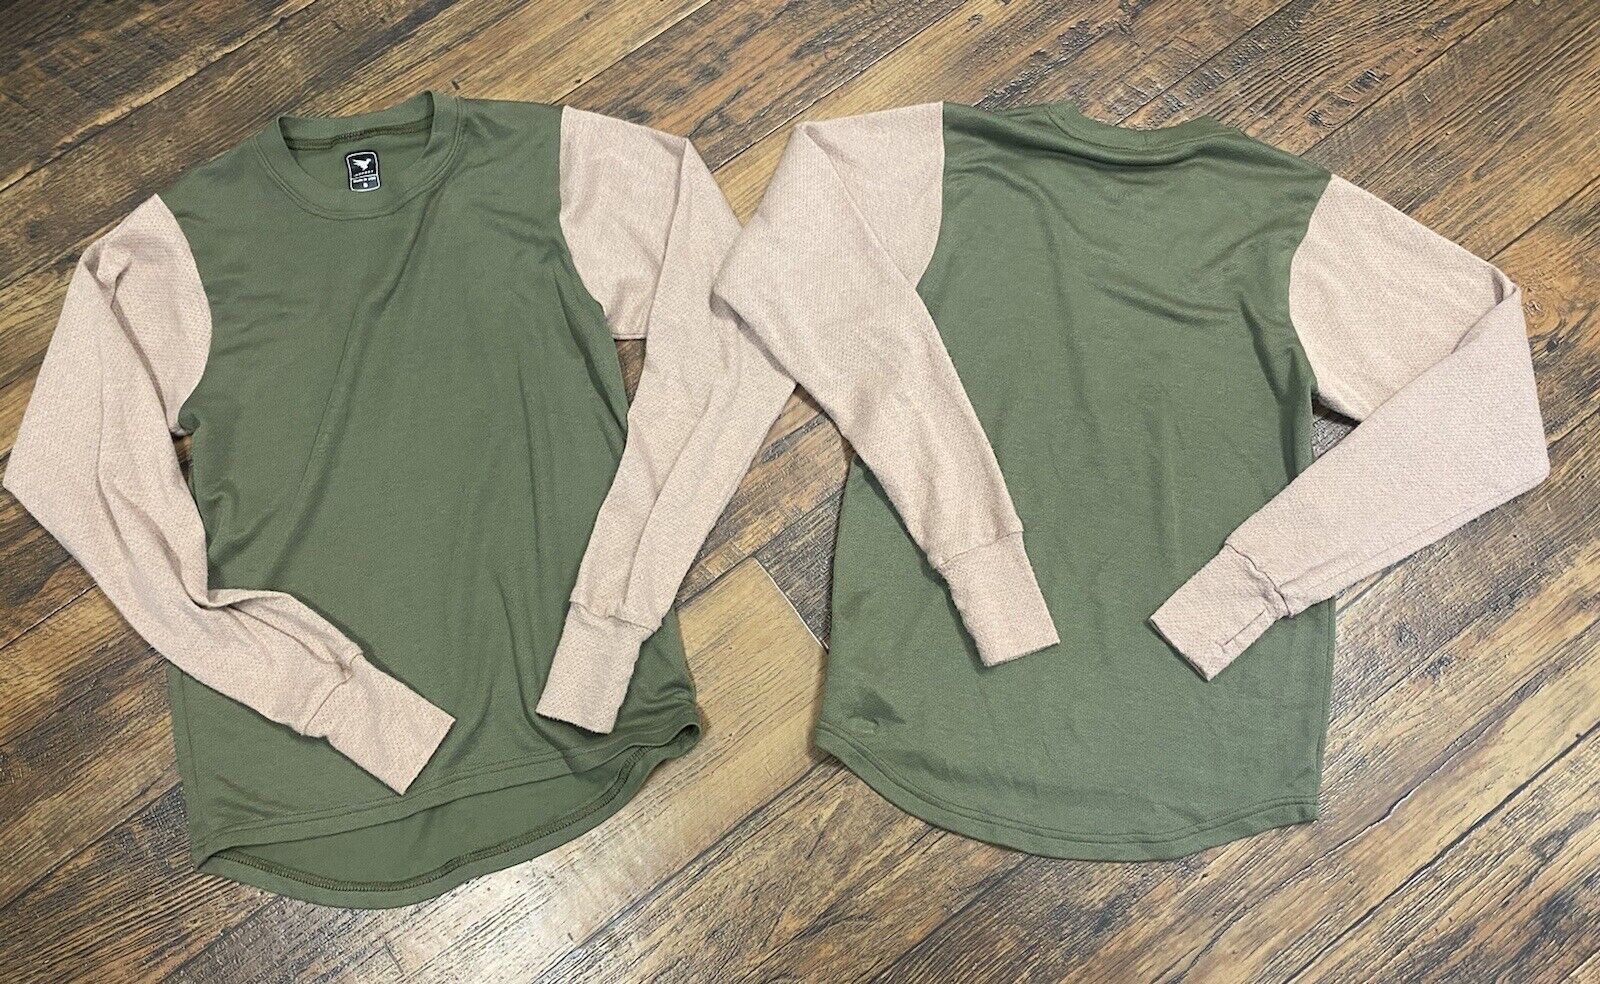 X2 YUSMC Insport Polartec Fleece Pullover Shirt Desert Tan / Green  Small